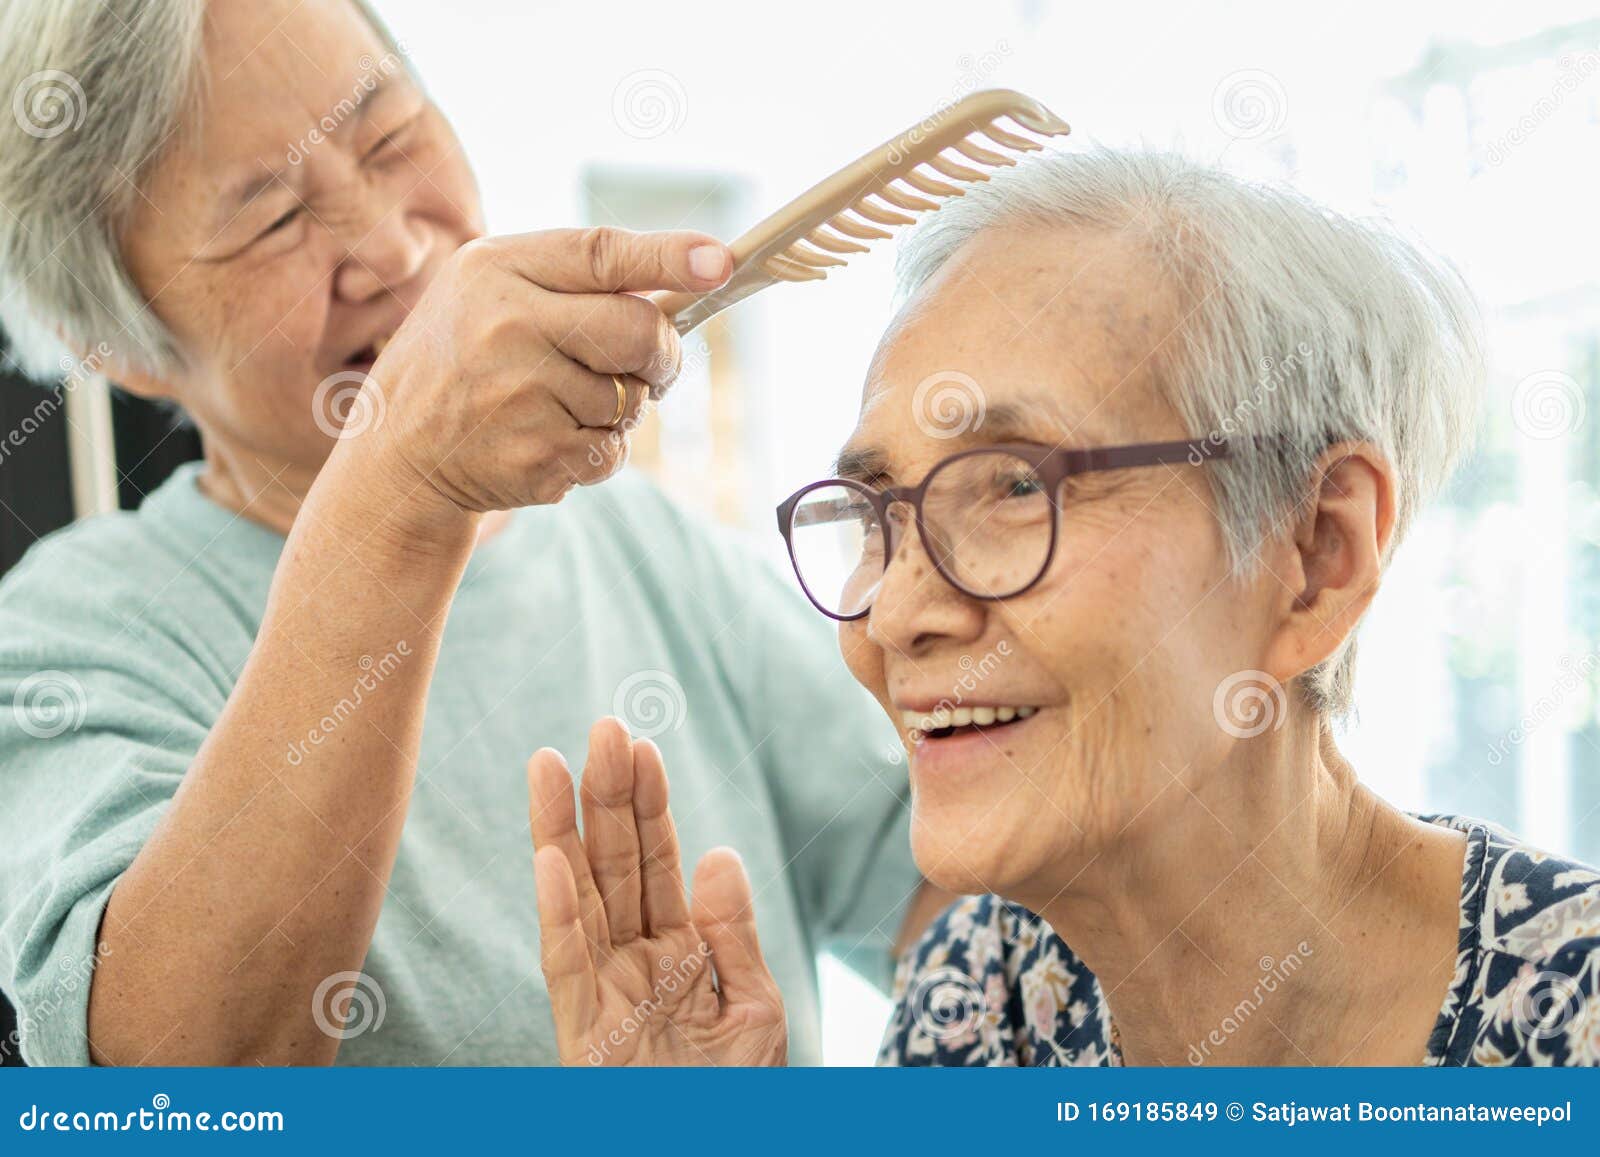 户外依偎在一起的快乐老年夫妇的肖像晚年幸福活力老人图片下载 - 觅知网